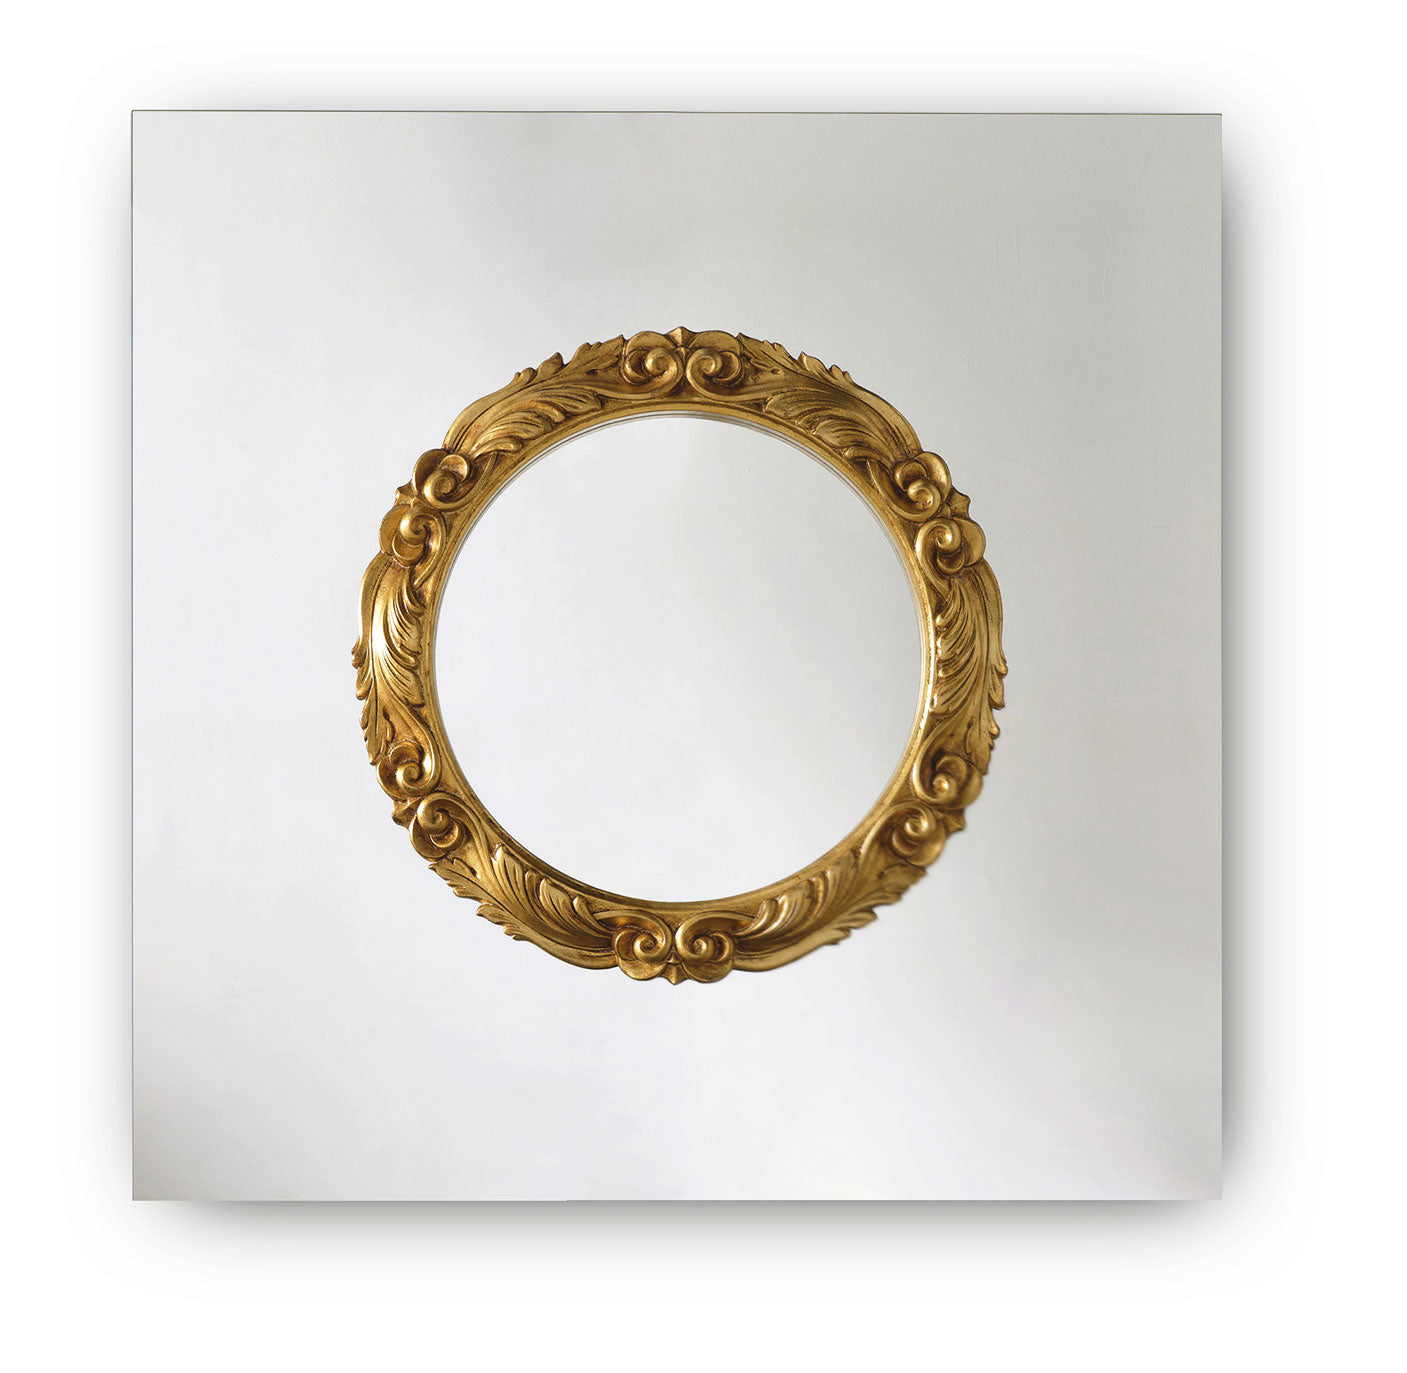 Fiam Ritratto Wall Mirror Gold 110cm